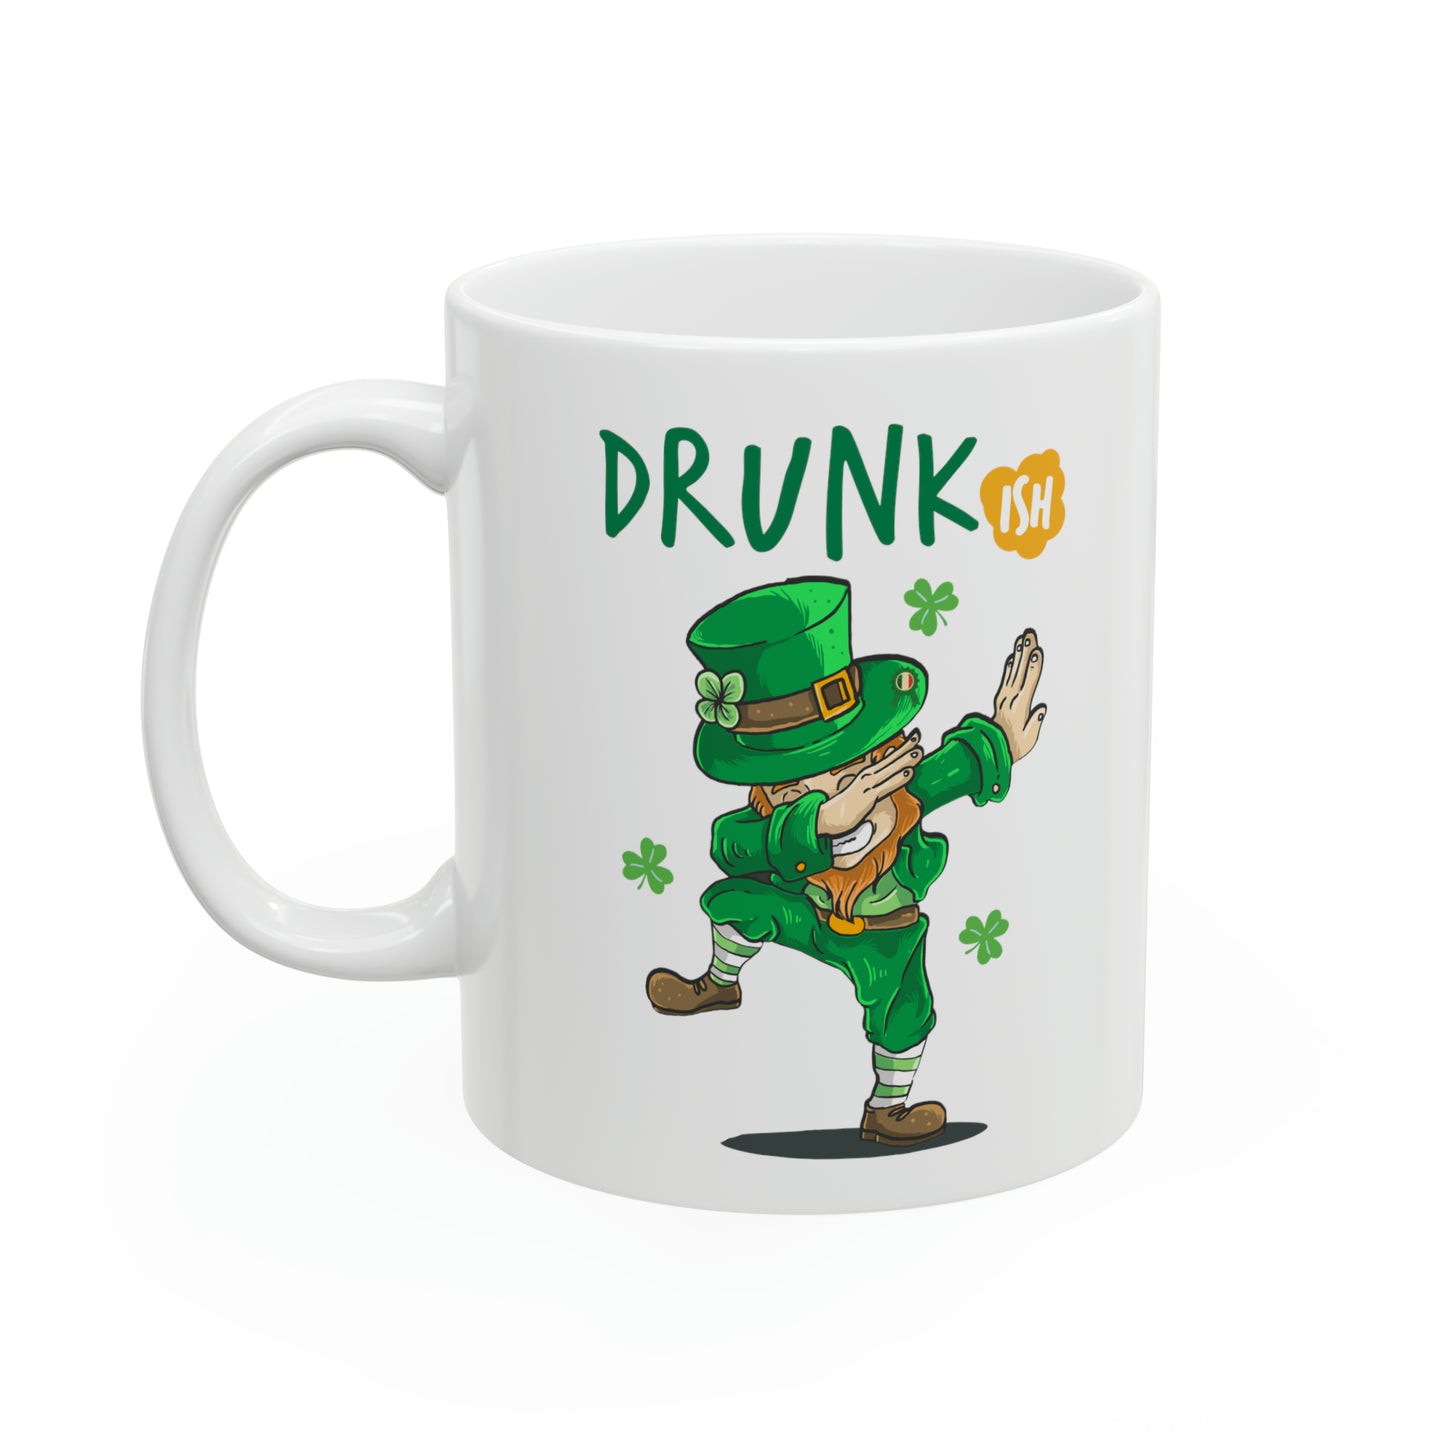 St Patrick's Day Mug  Drunk ish Ceramic Mug 11oz